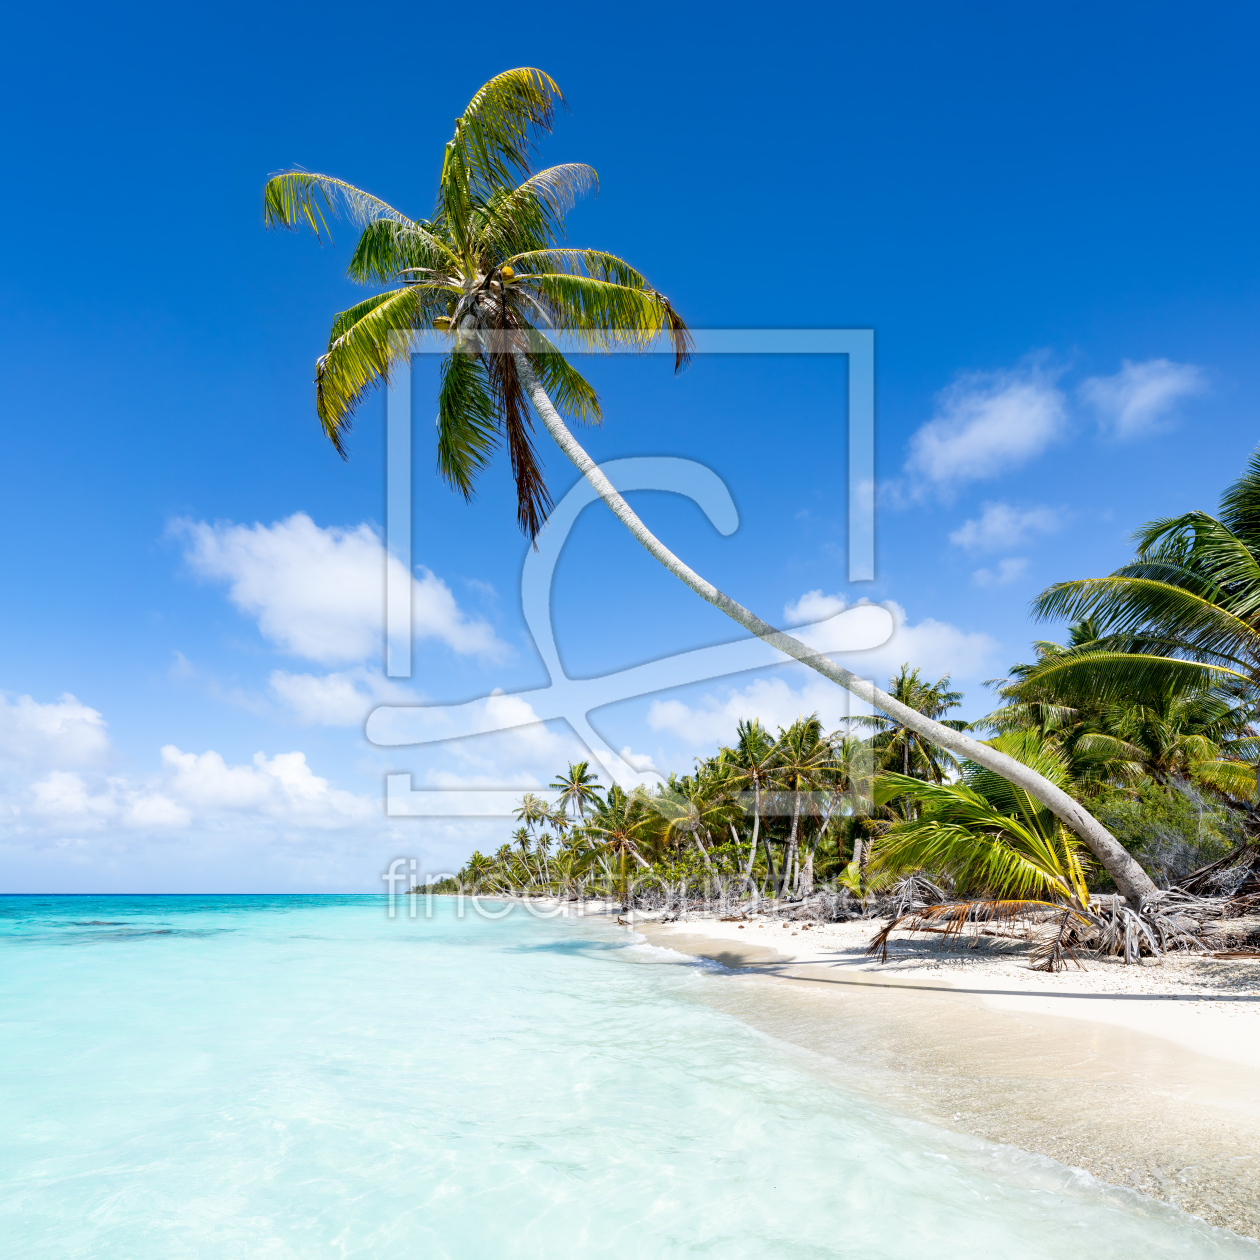 Bild-Nr.: 12454812 Kokospalme am Strand erstellt von eyetronic